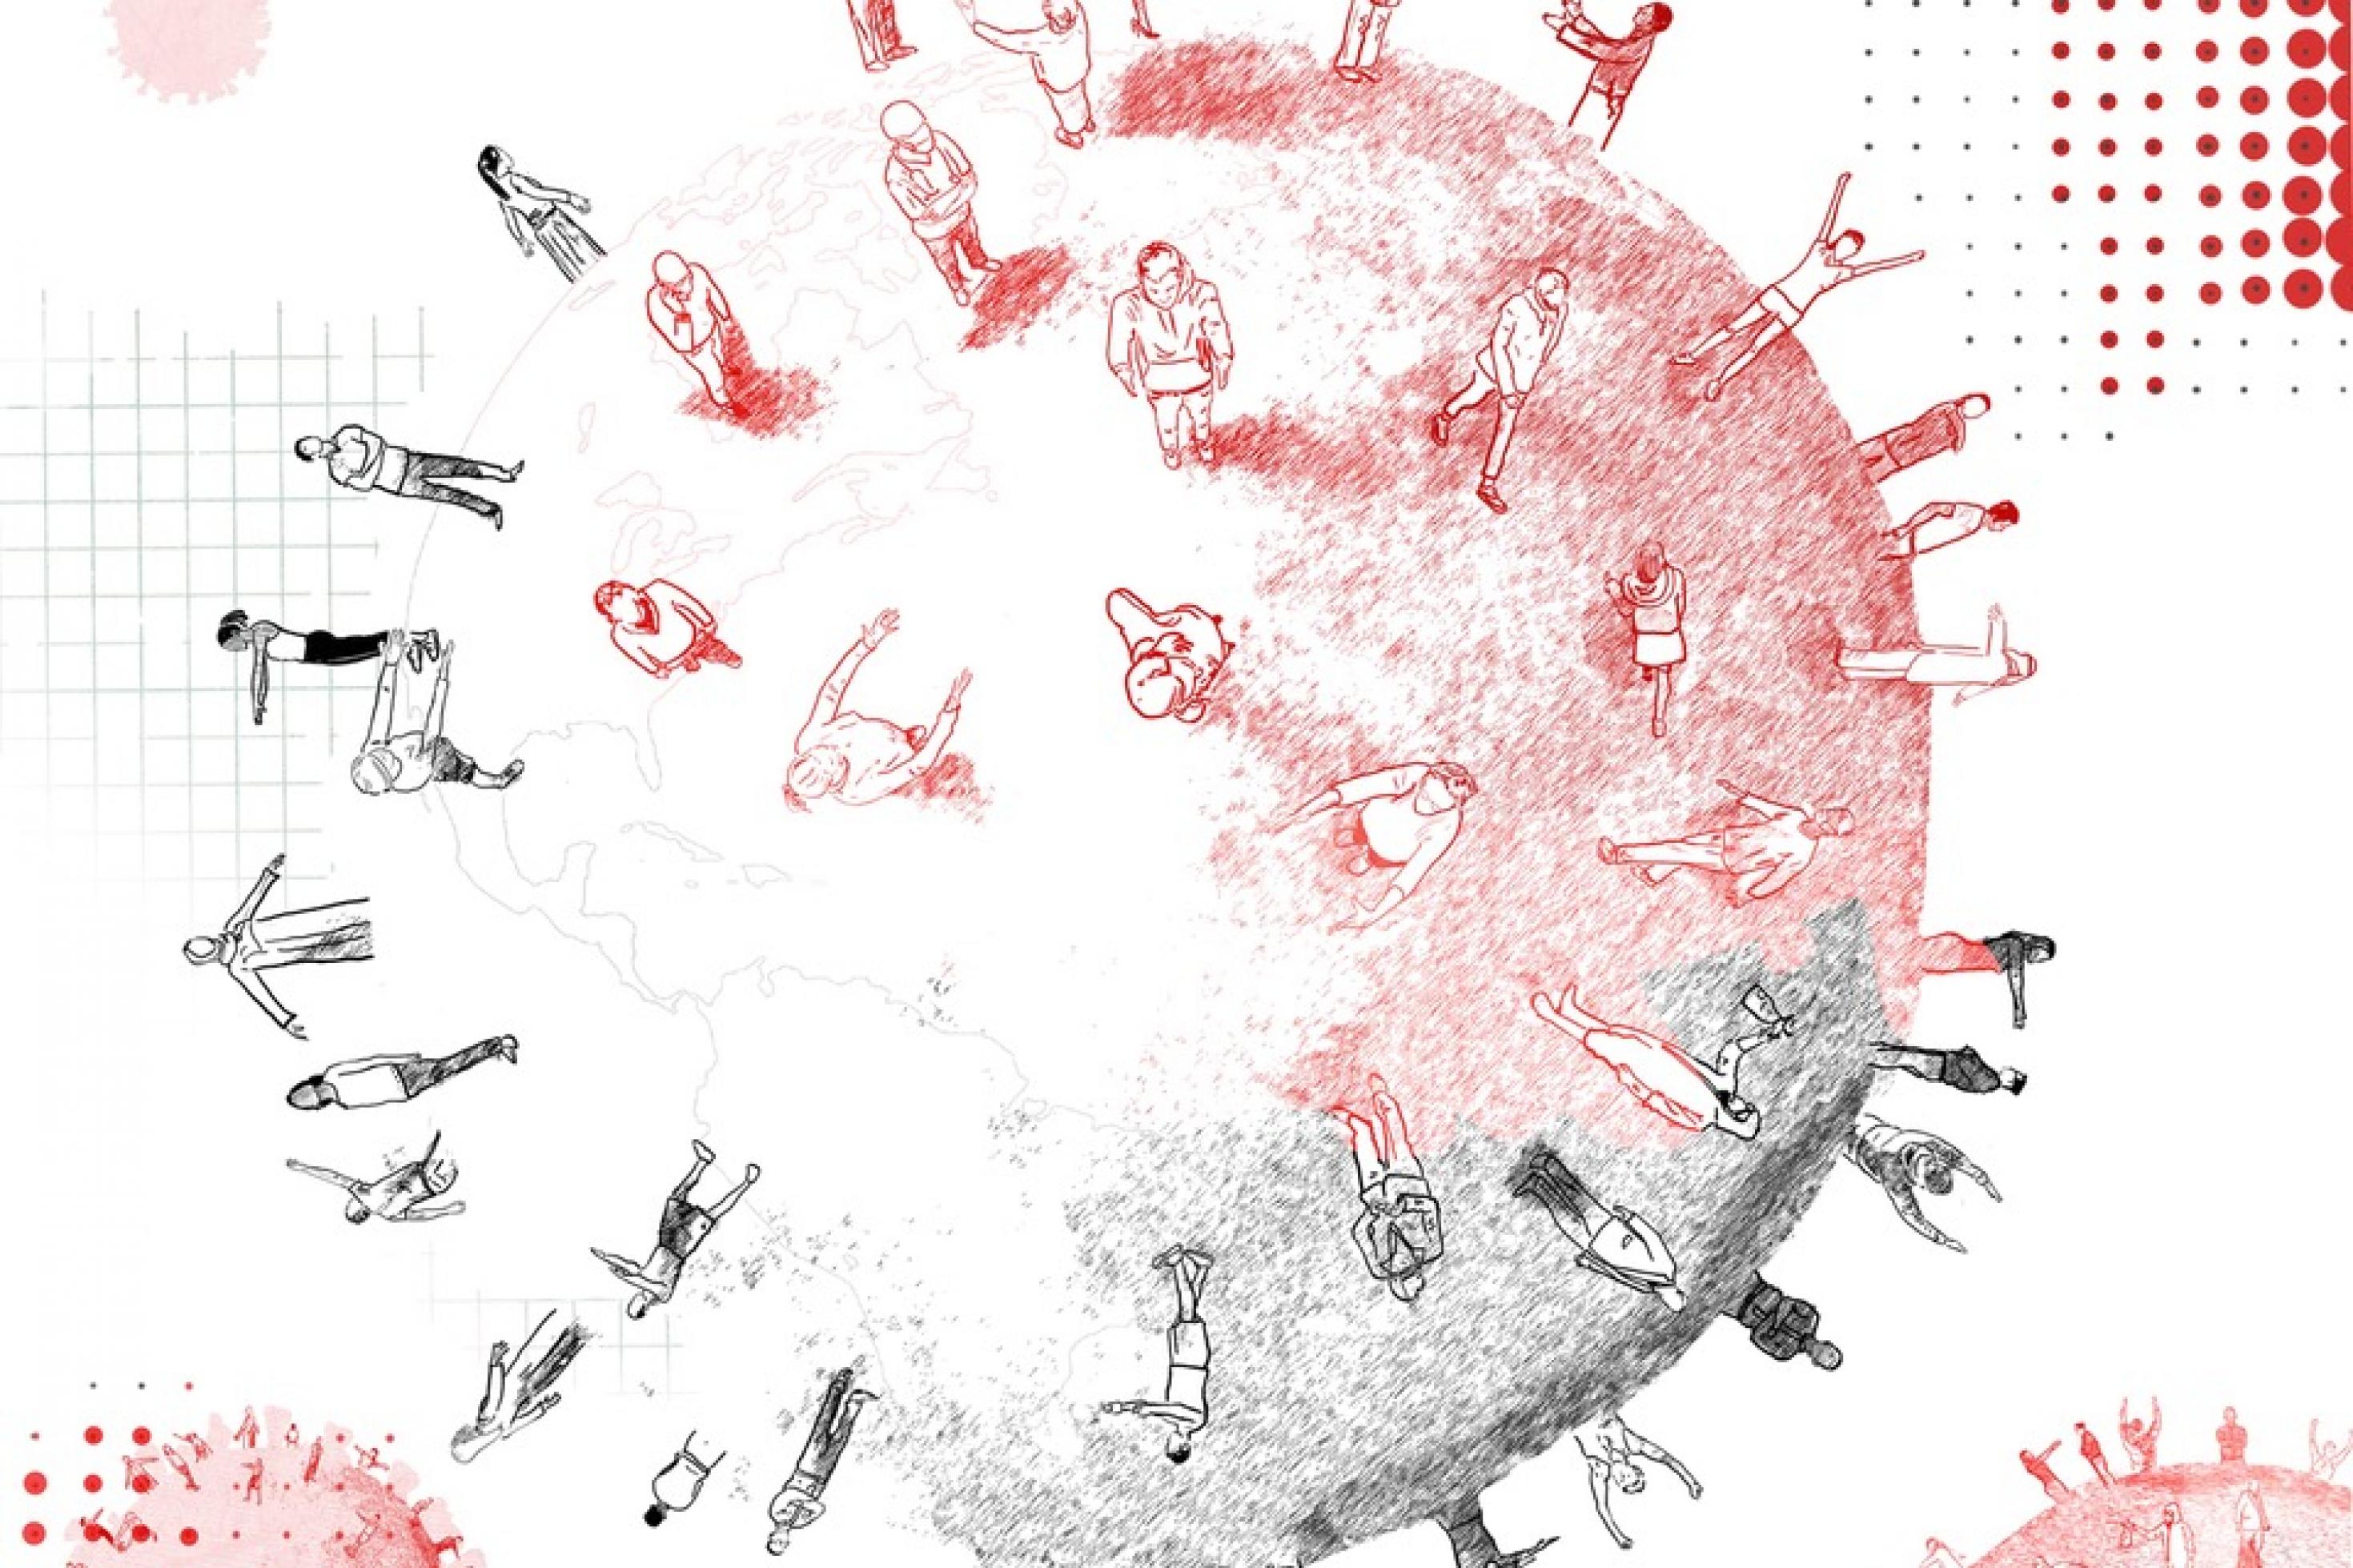 Auf dem Titelbild von „Pandemie“ ist eine Zeichnung zu sehen, die einen Globus darstellt. Auf diesem Globus sind in Übergröße Menschen verteilt. Das symbolisiert die aktuelle soziale Trennung ebenso wie das Zusammengehörigkeitsgefühl.